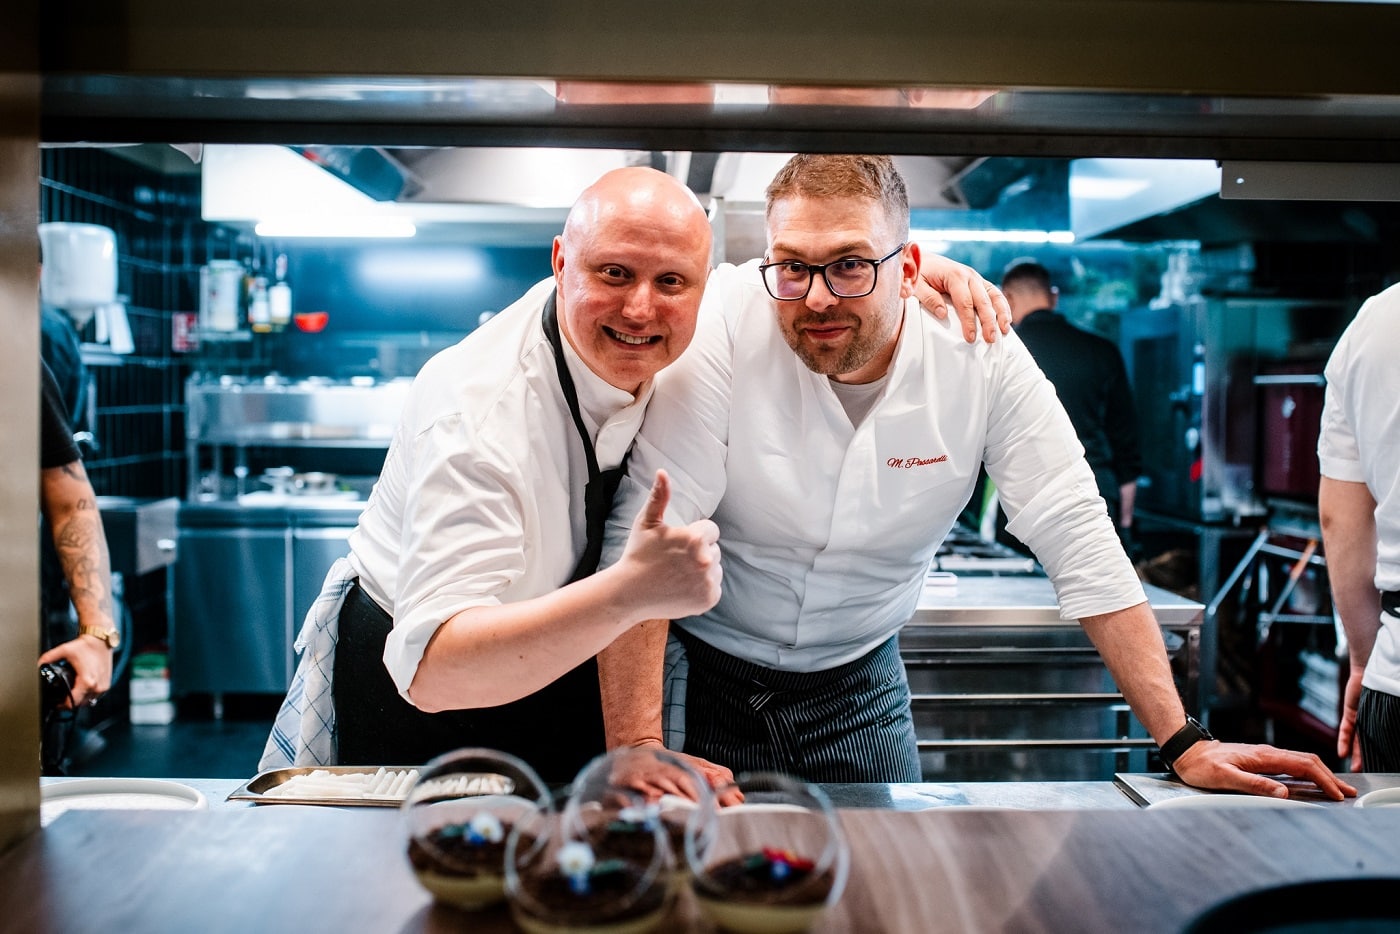 Cină aniversară la Sciccheria, alături de un chef prezent în ghidul Michelin